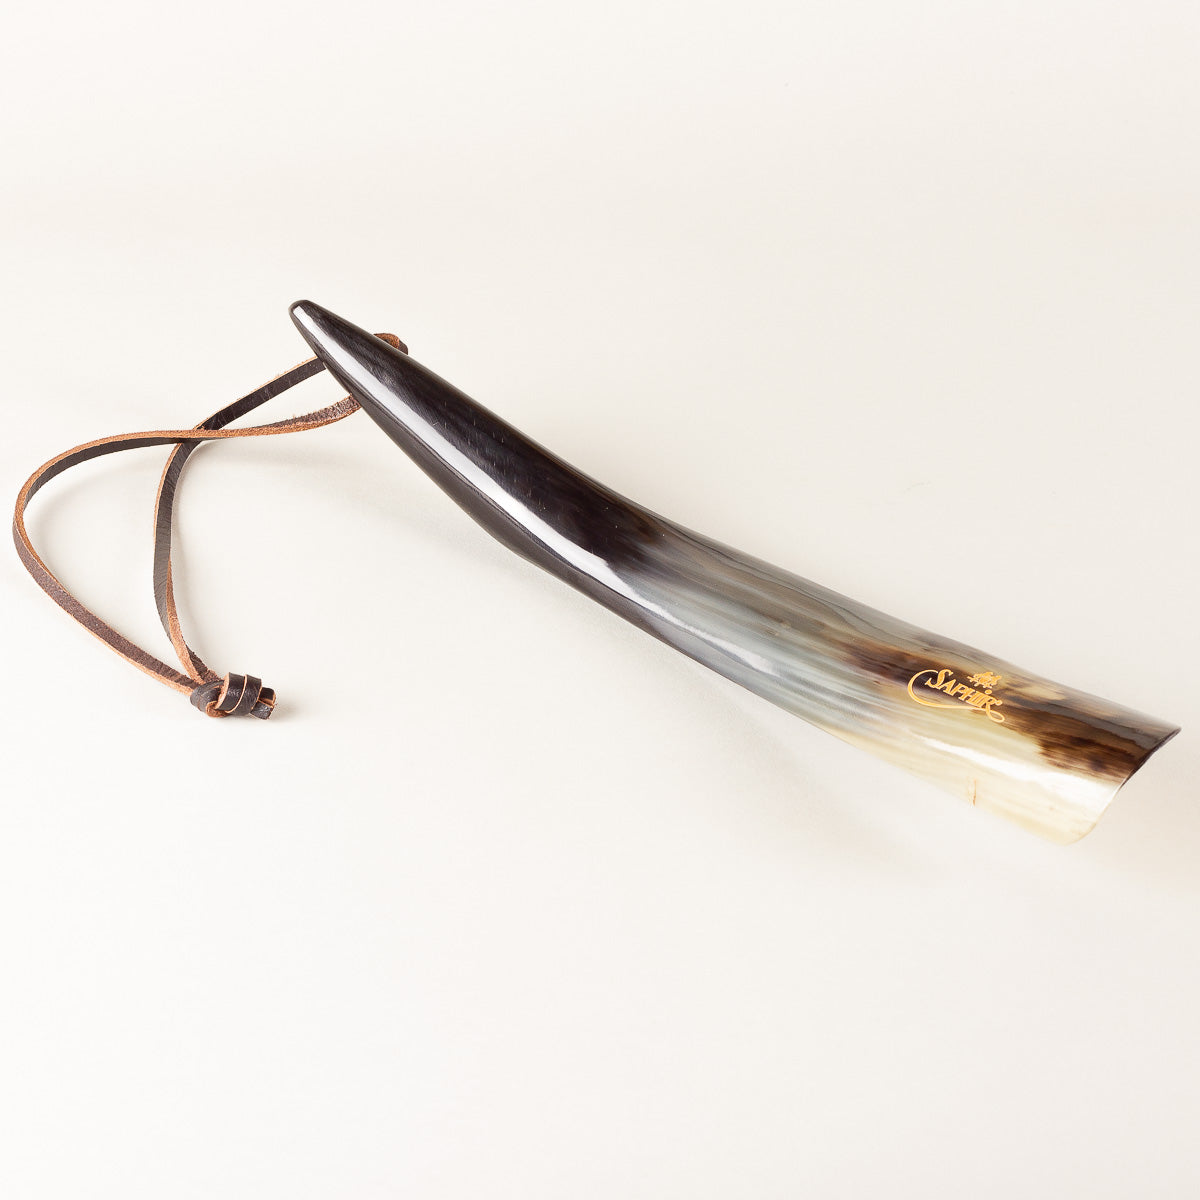 Saphir Médaille d'Or Shoe horn - 405mm